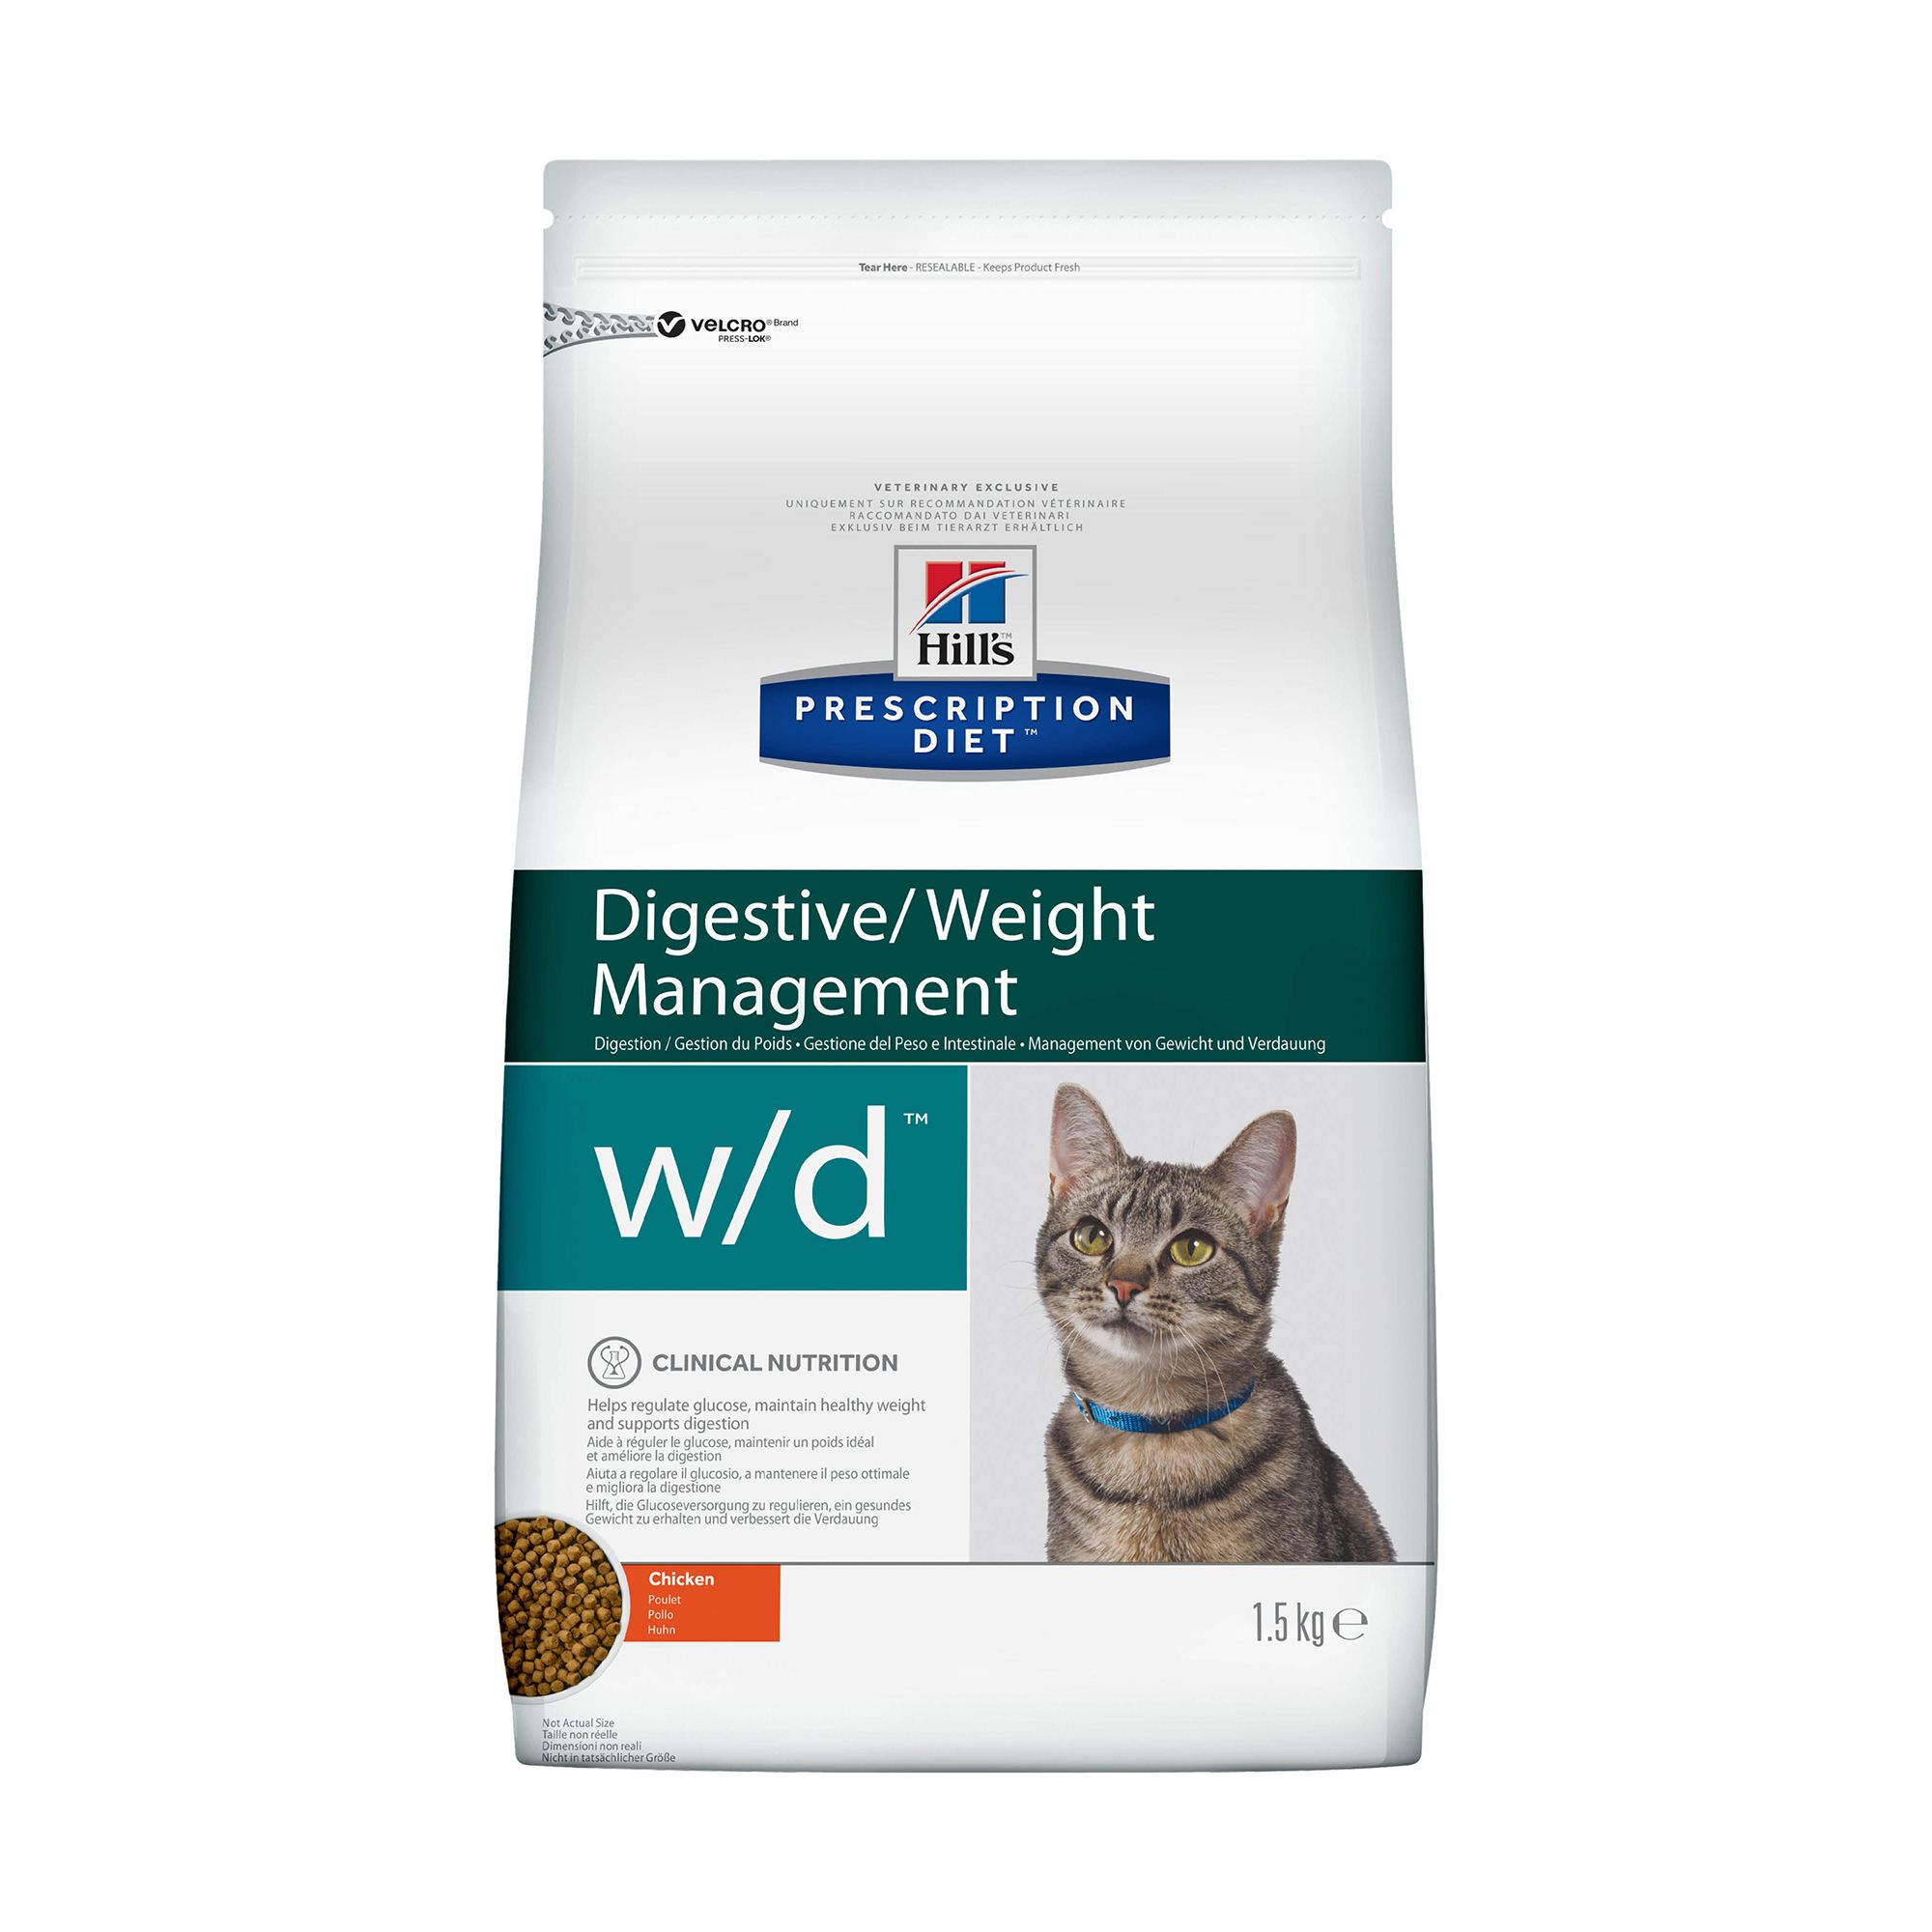 Hill's PD Digestive/Weight Management W/D для кошек 1,5кг 1